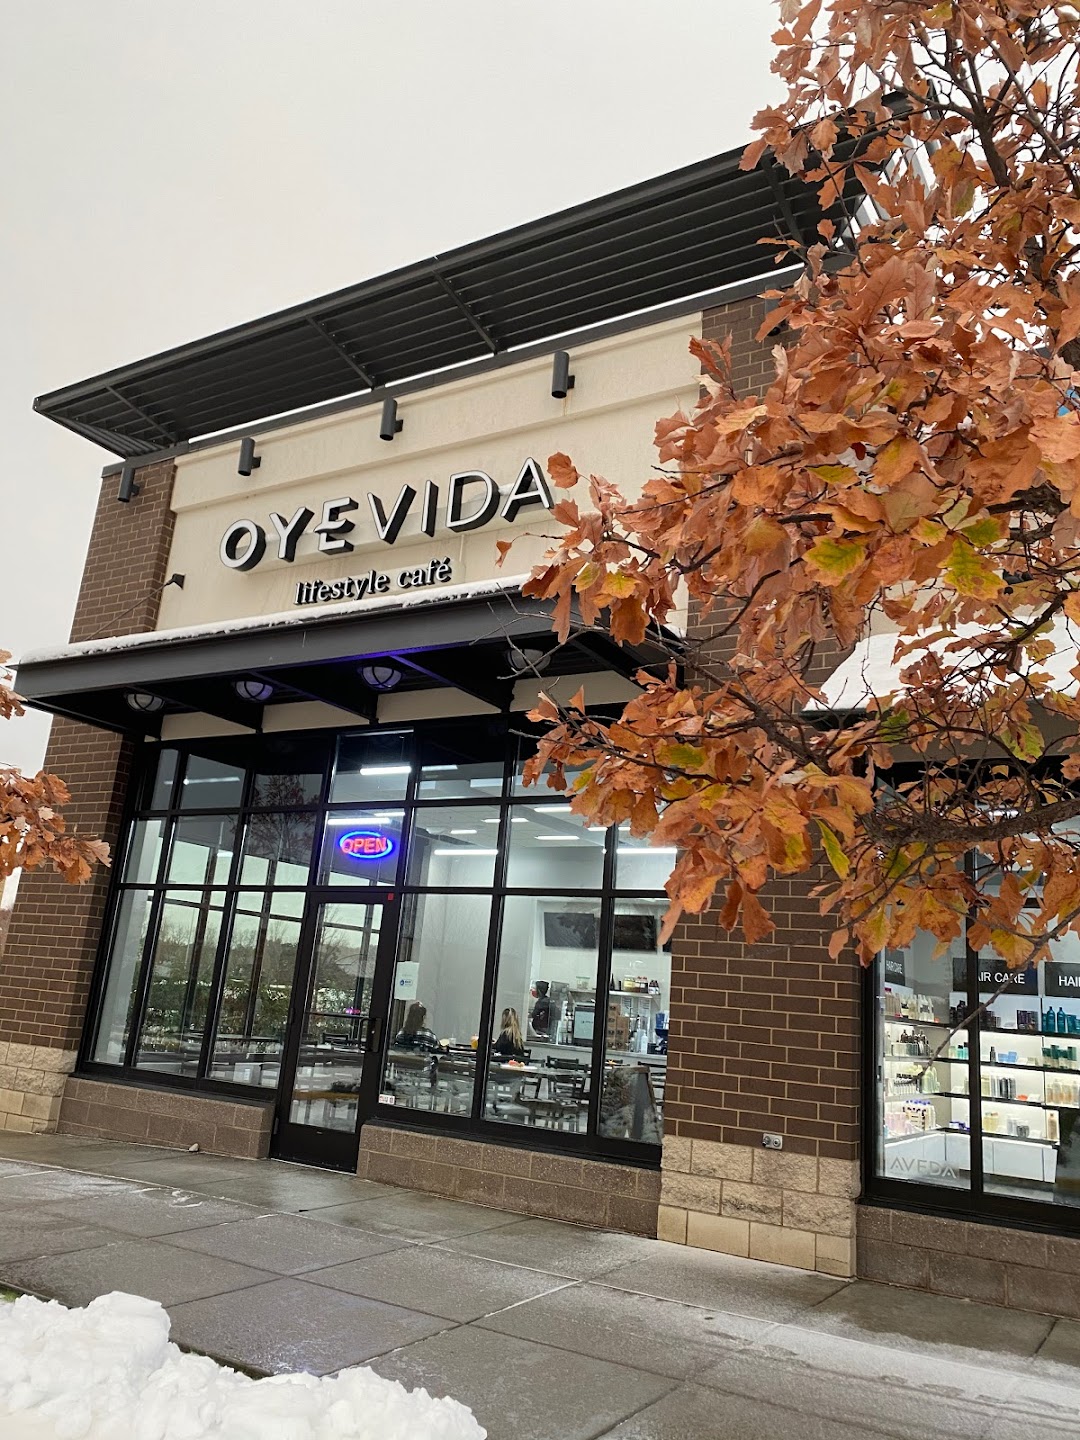 Oyevida Lifestyle Cafe